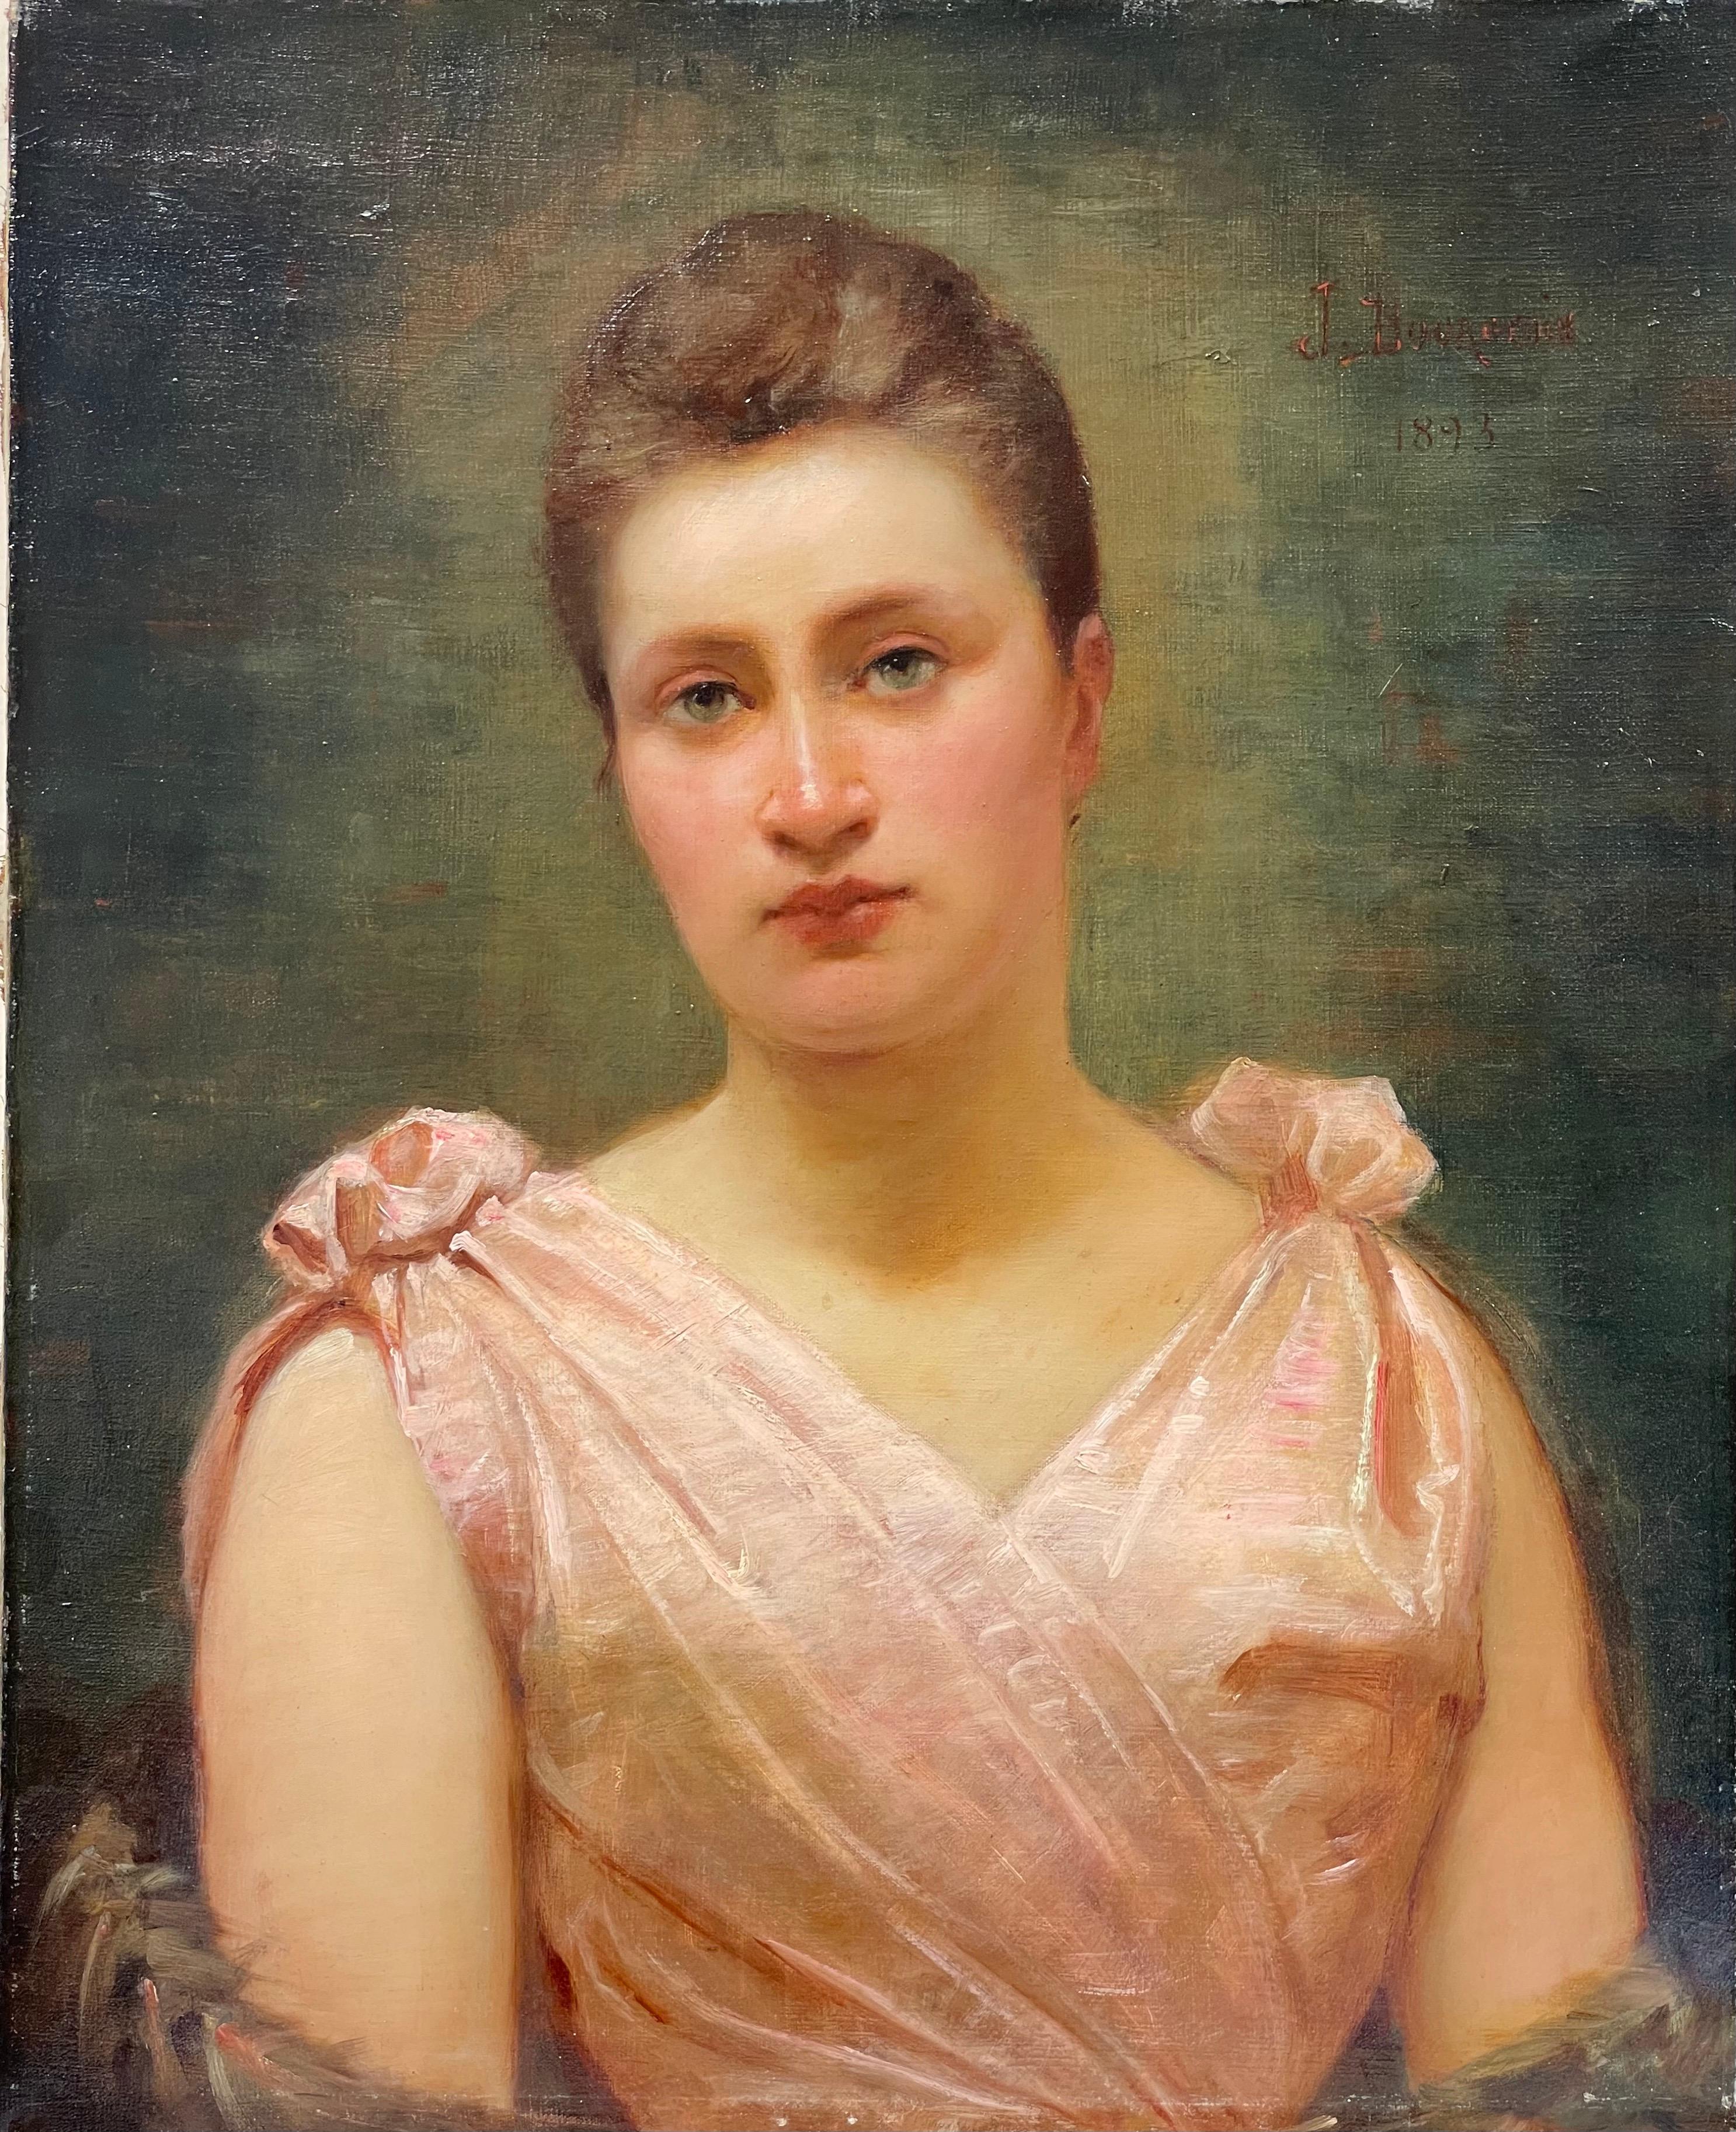 1890s portrait